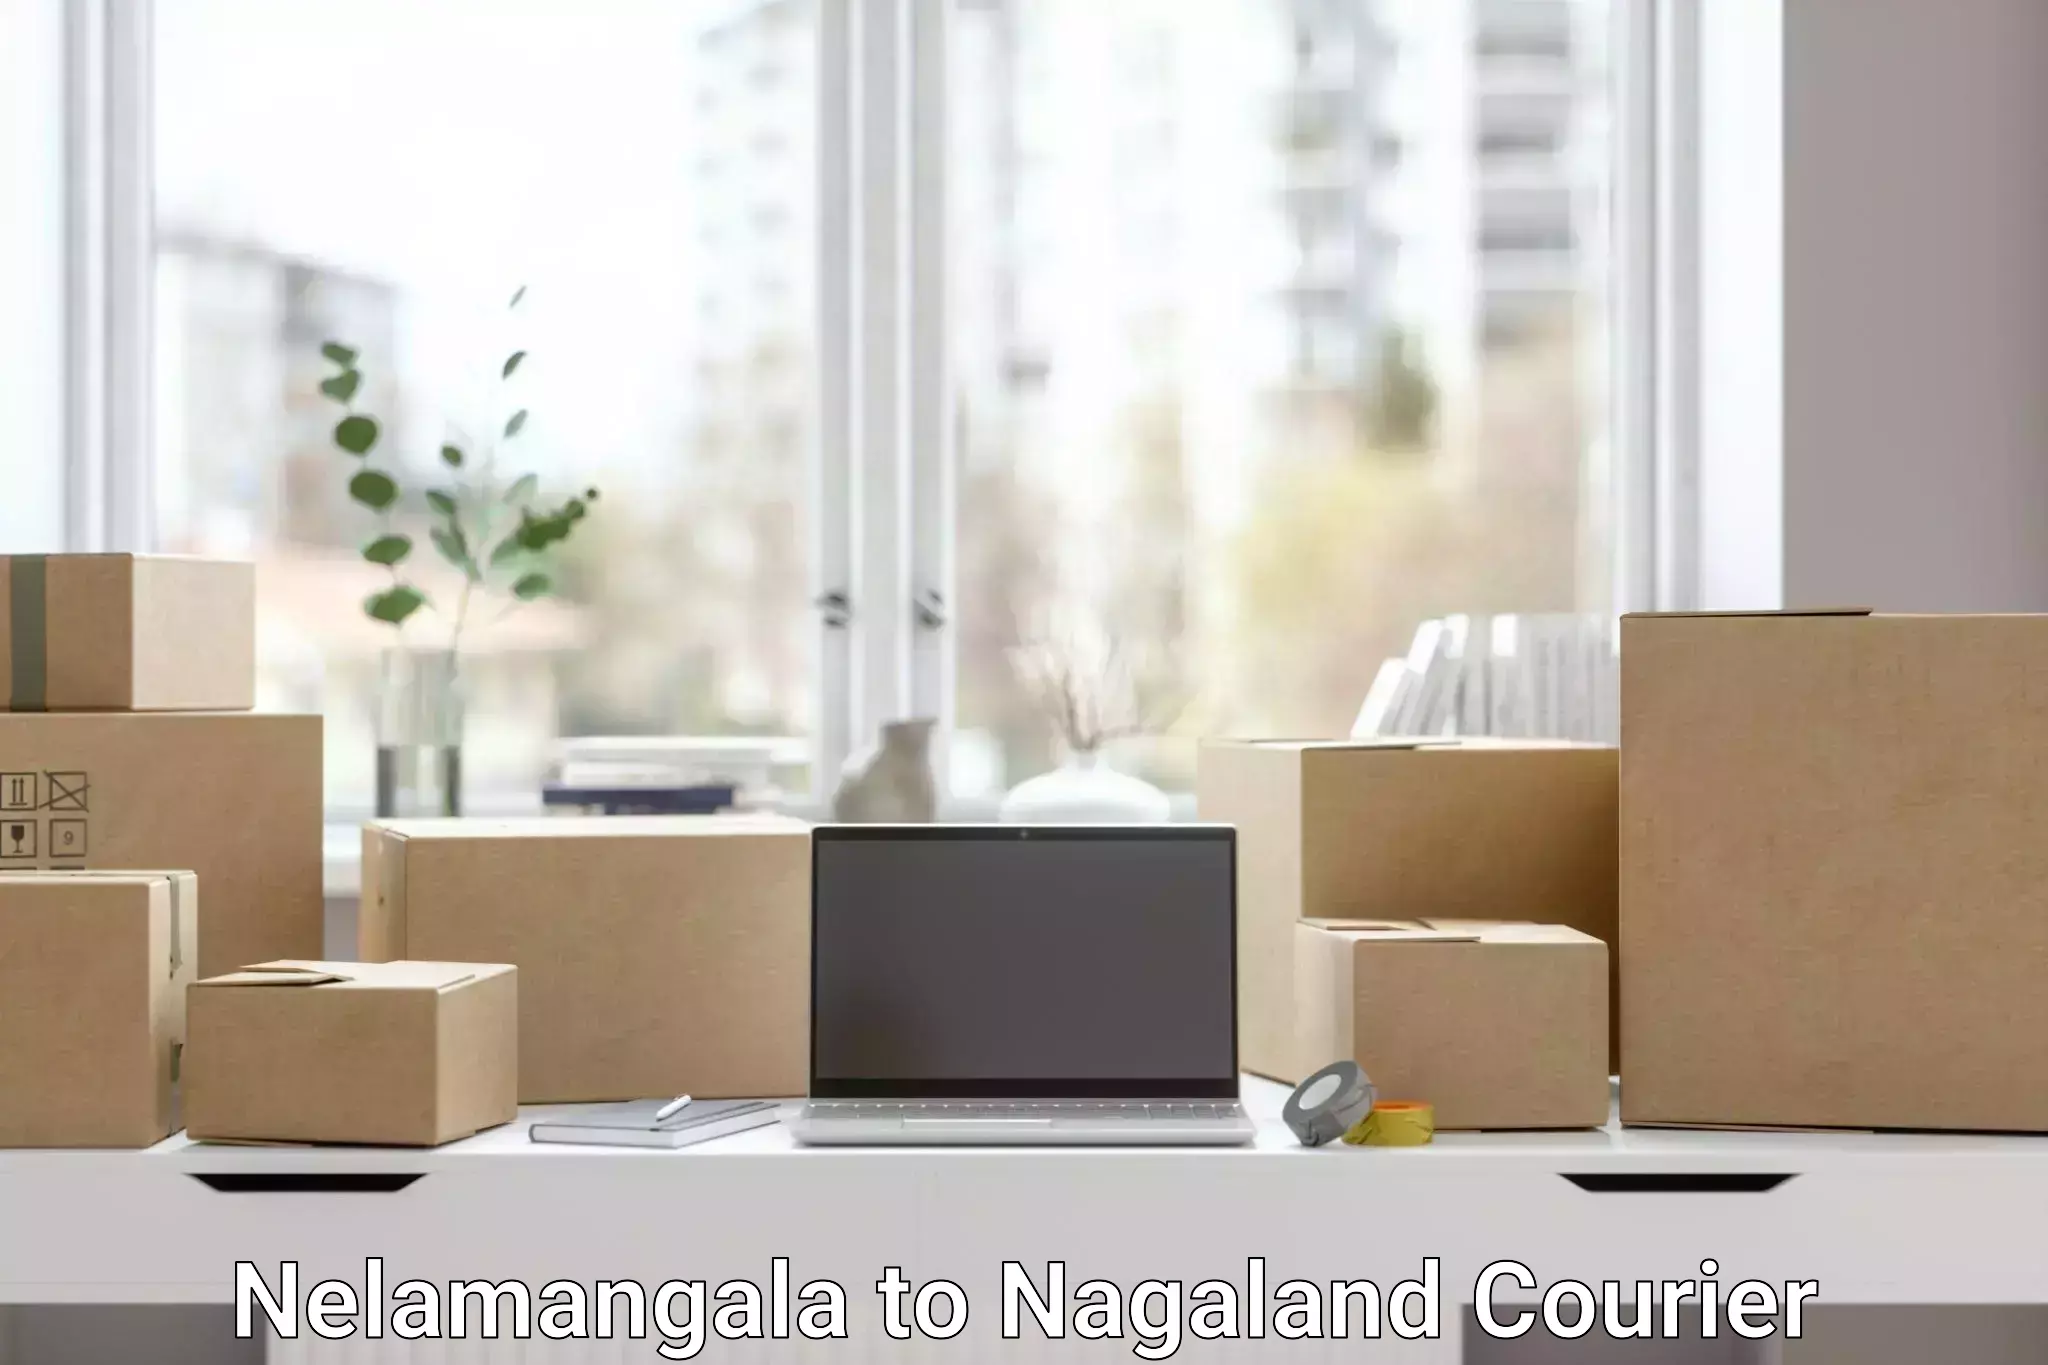 Large-scale shipping solutions Nelamangala to Kohima